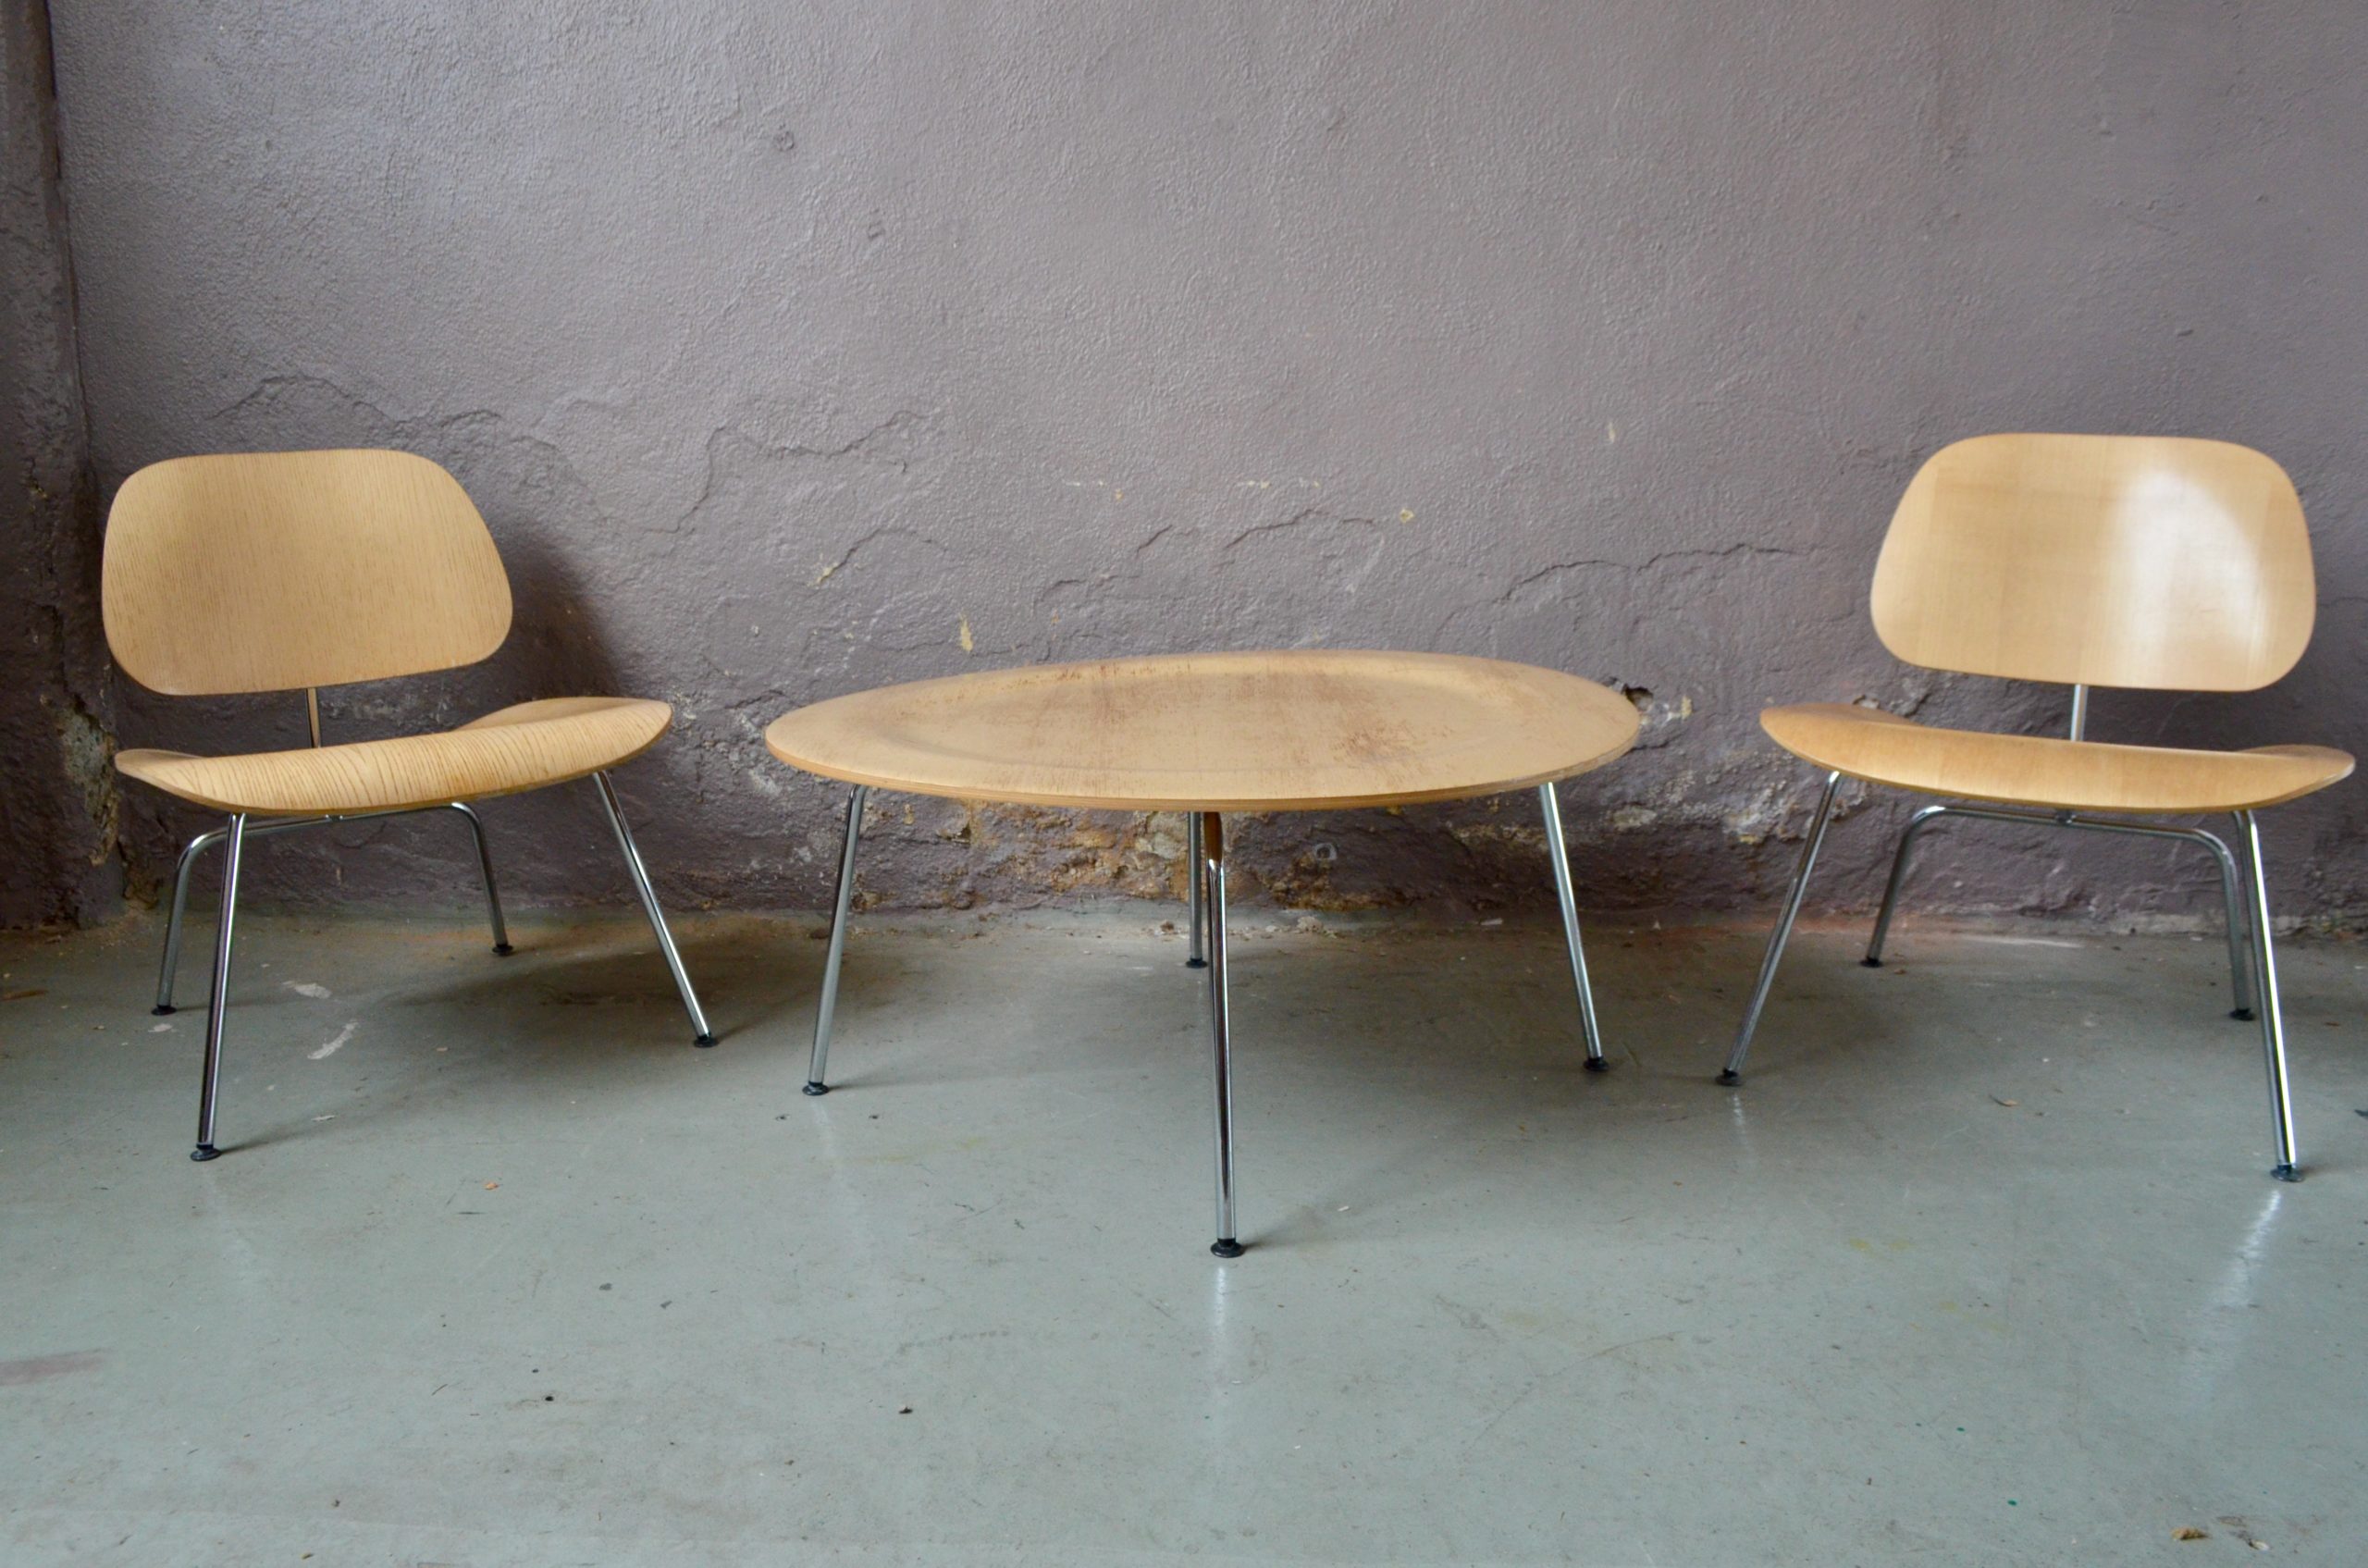 Les fauteuils LCM et la table CTM sont une parfaite illustration du travail des Eames. L'utilisation du tube d'acier et du contreplaqué permettent une production industriel d'un mobilier aux formes arrondies, souples et organiques. Composé de deux chauffeuses et d'une table basse assortie c'est un élégant ensemble de salon, au design exigeant.